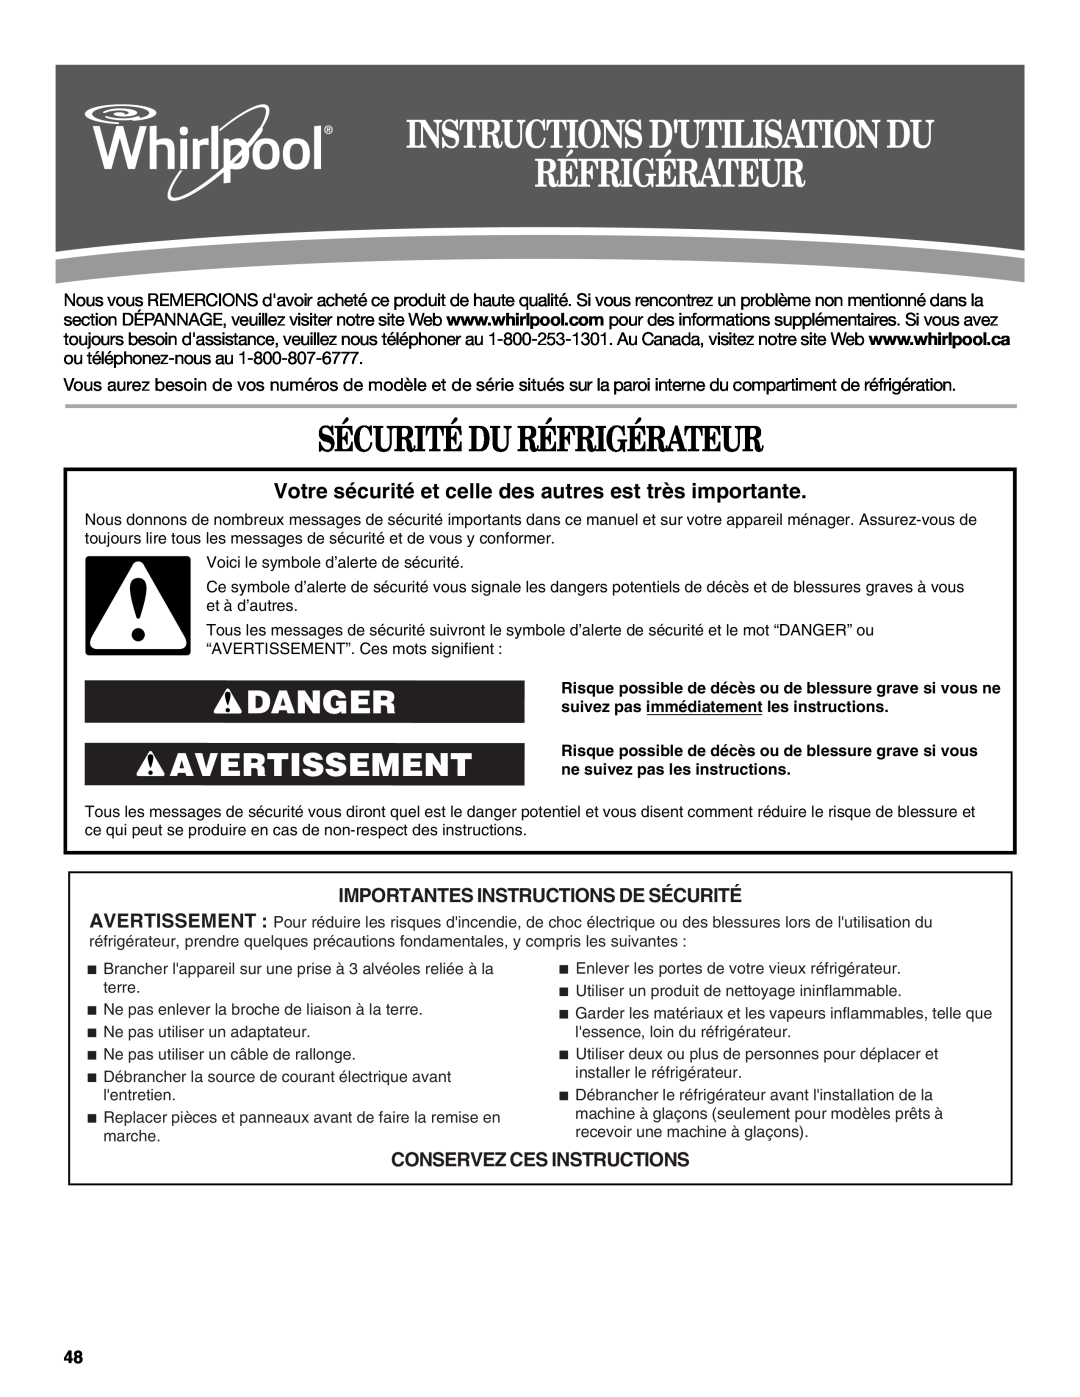 Whirlpool W10359303A Instructions Dutilisation Du Réfrigérateur, Sécurité Du Réfrigérateur, Danger Avertissement 